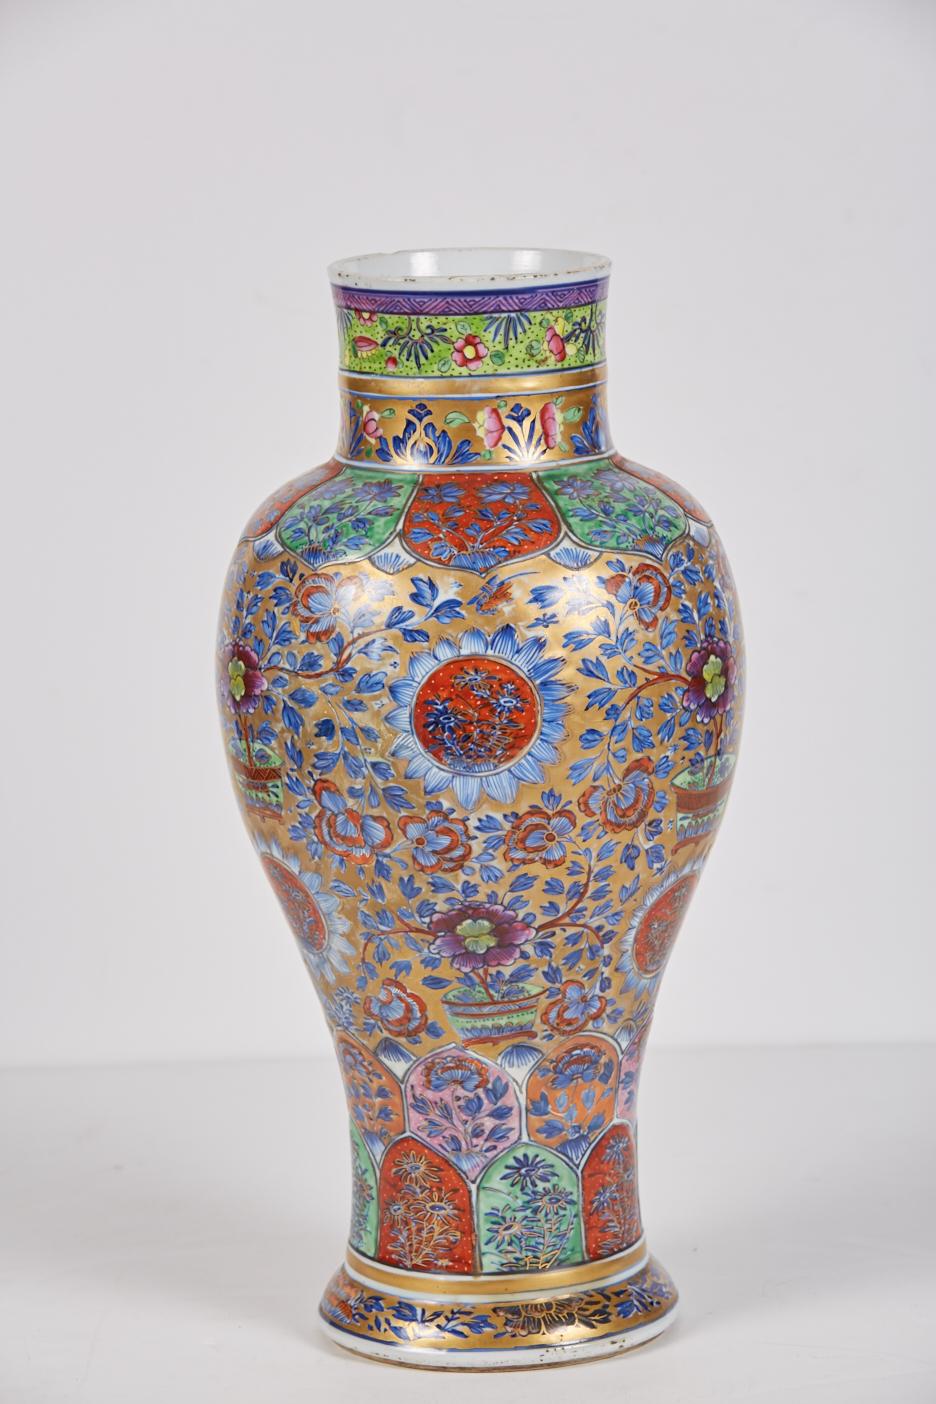 Très grand vase en porcelaine d'exportation chinoise polychrome clobée du 18e siècle, décoré en Angleterre au 19e siècle. La base présente un double cercle en bleu sous glaçure avec une marque centrale non identifiable (peut-être un champignon